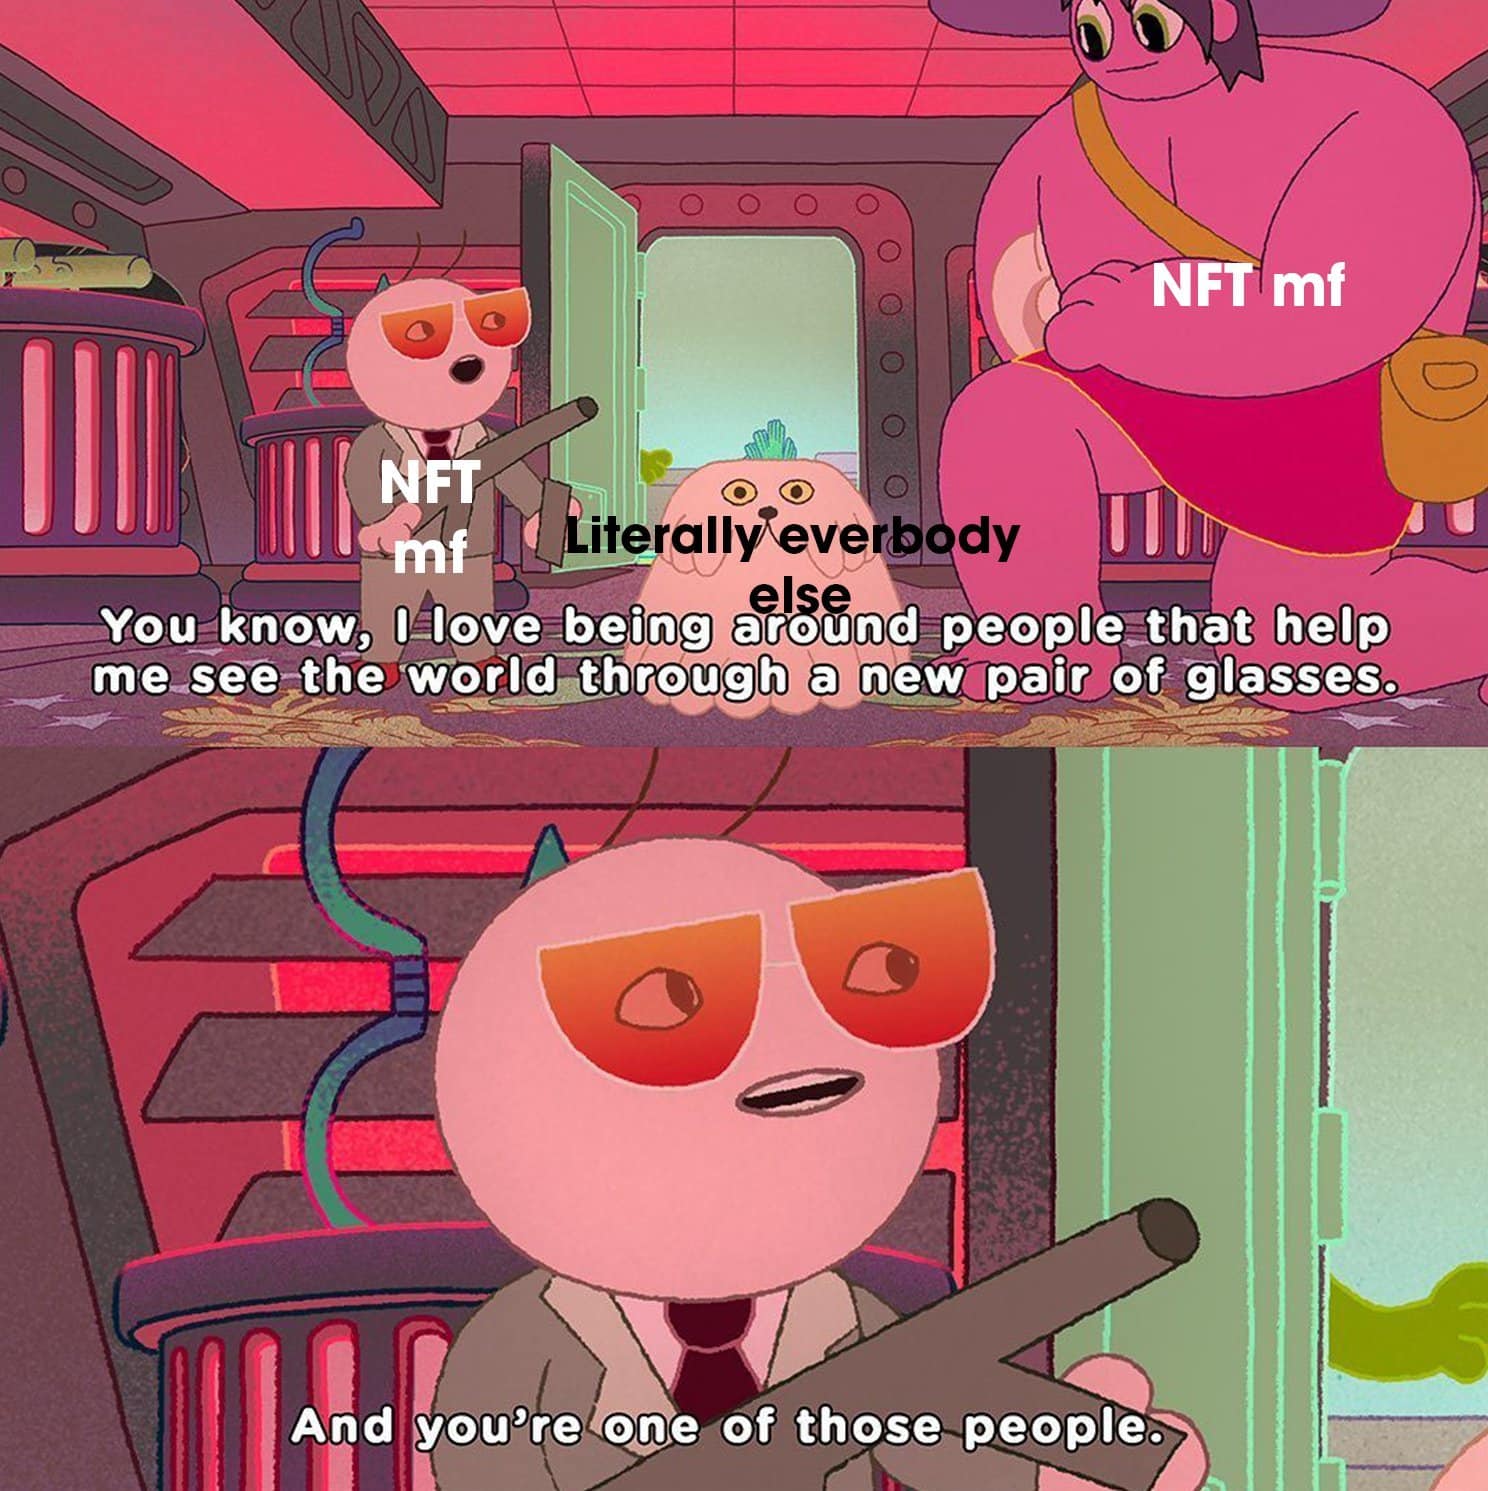 NFT degens vs normal people meme